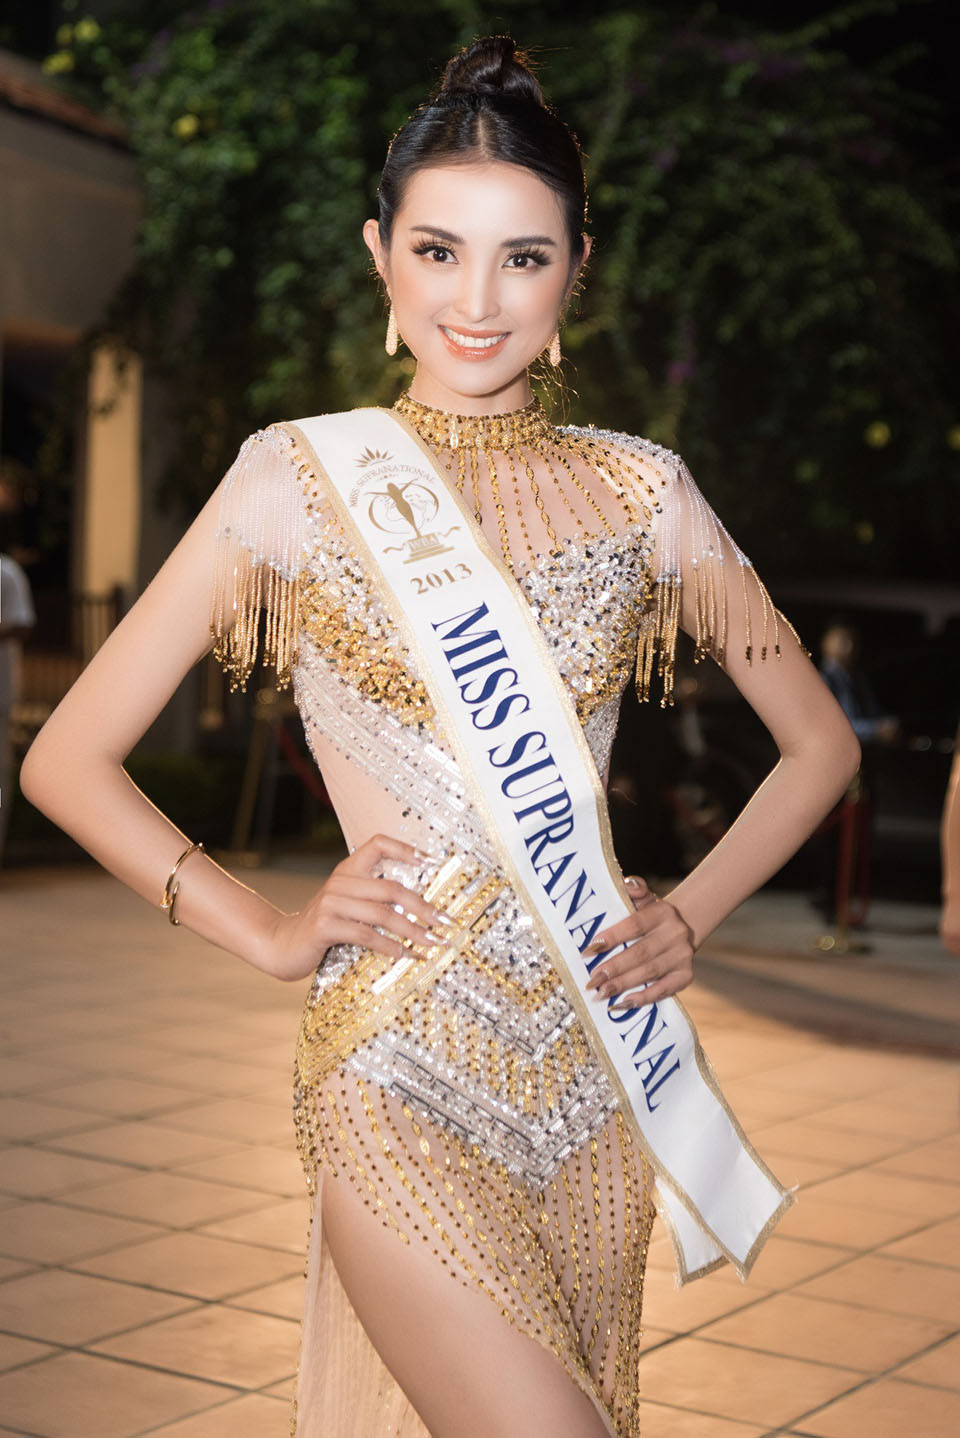 “Hoa hậu Siêu quốc gia 2013” đến Việt Nam làm vedette show diễn trong rừng - 1